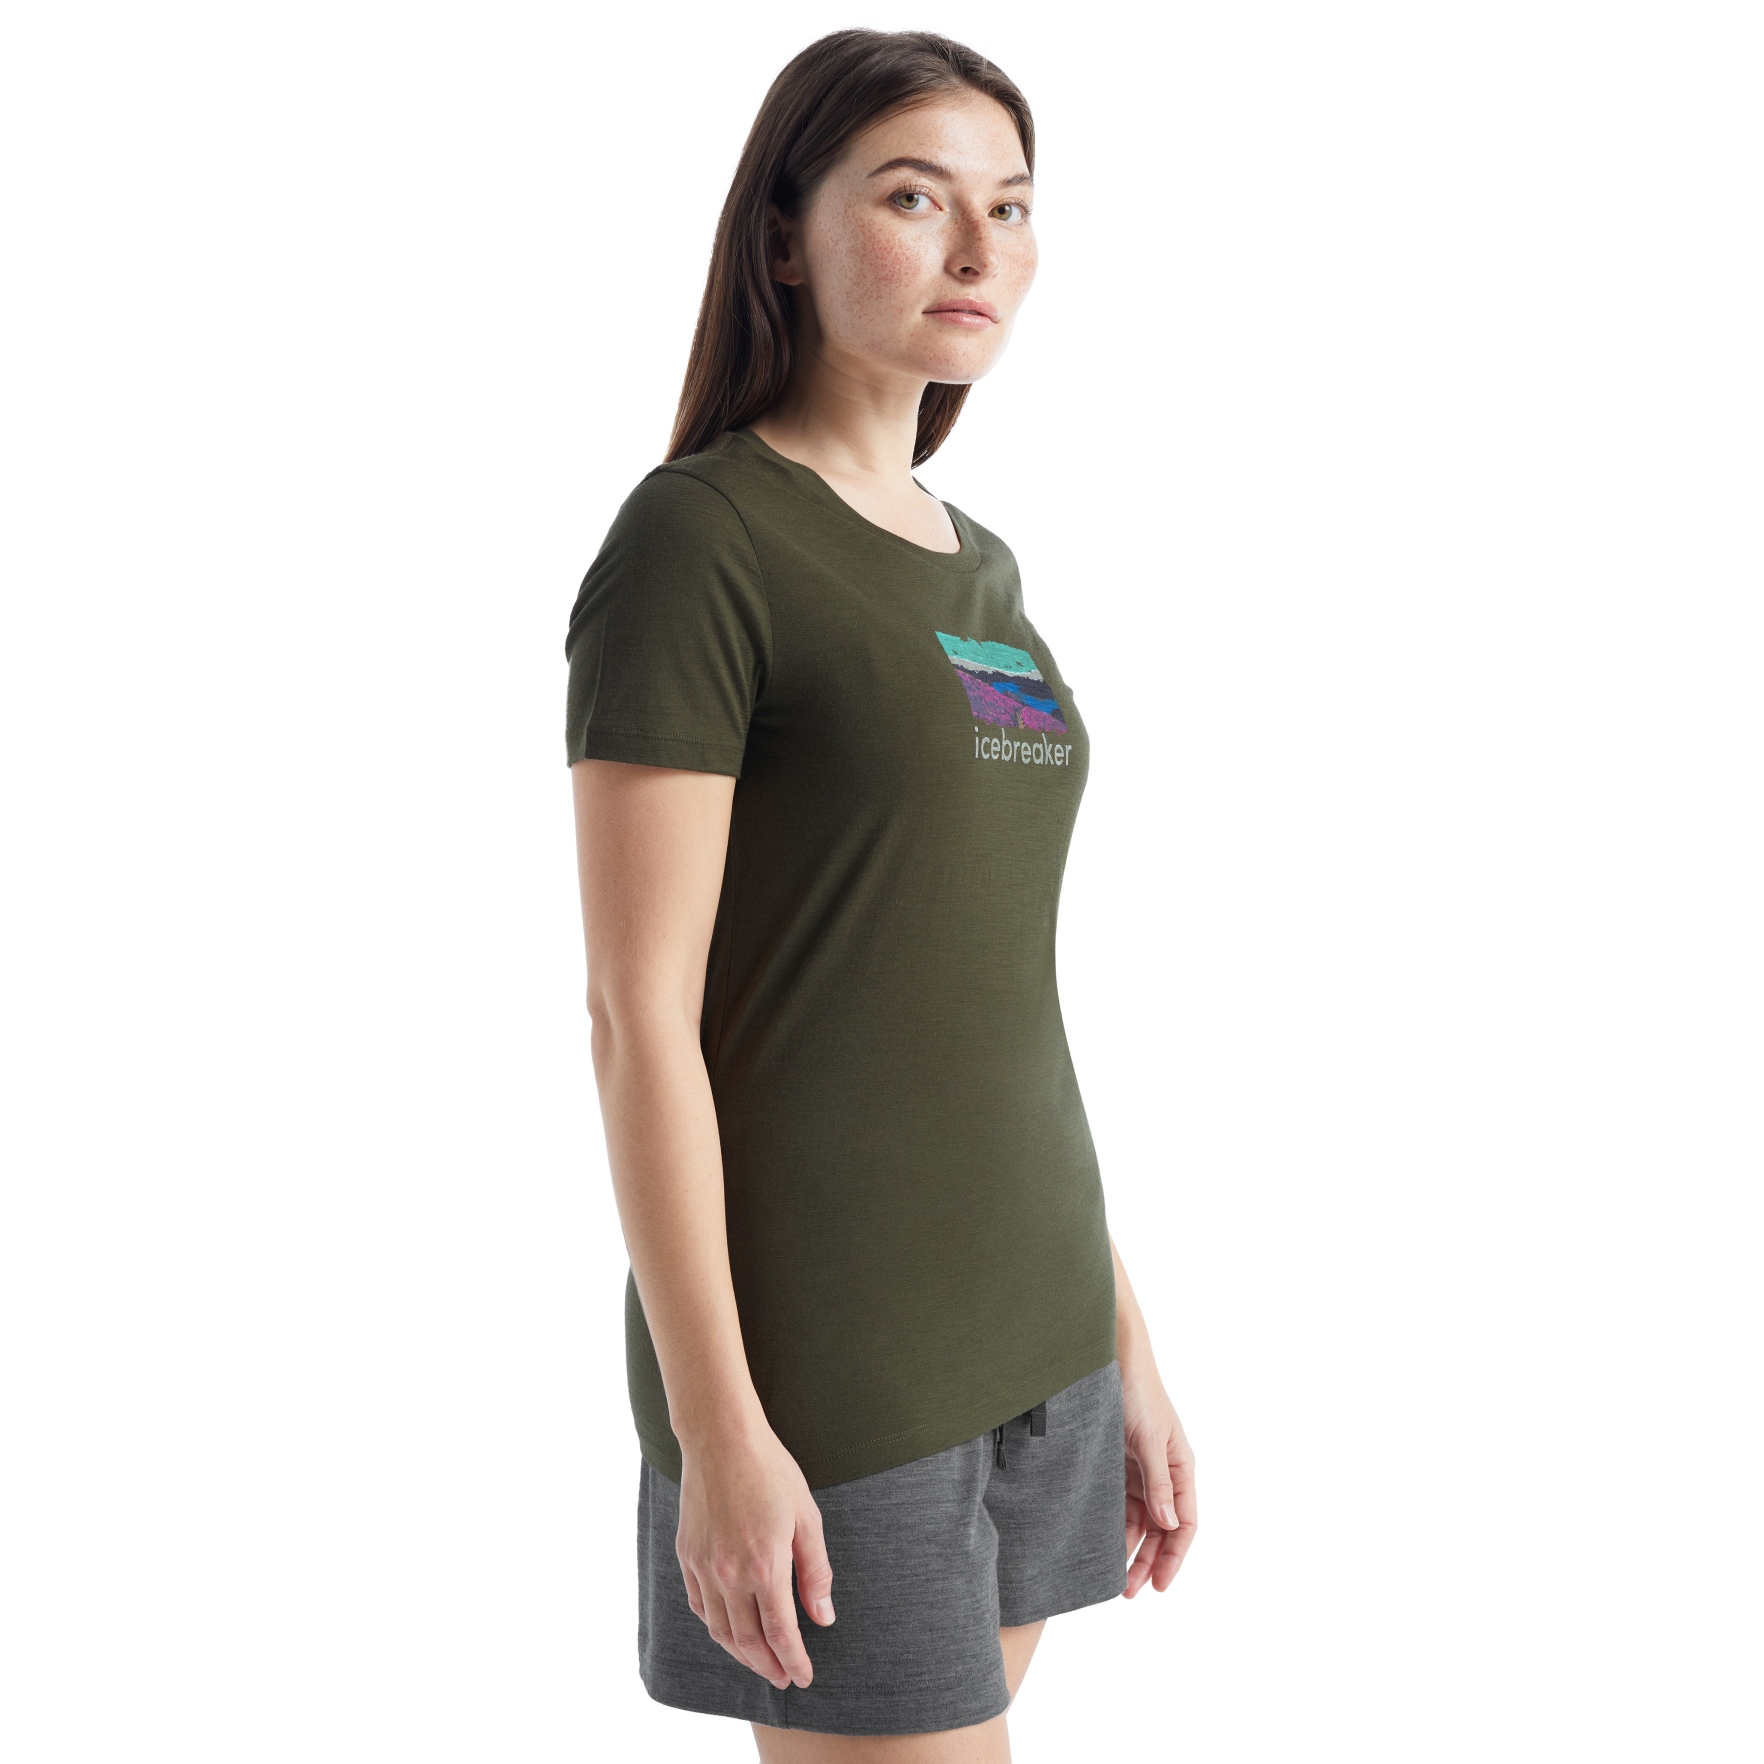 Produktbild von Icebreaker Tech Lite II Trailhead Damen T-Shirt - Loden